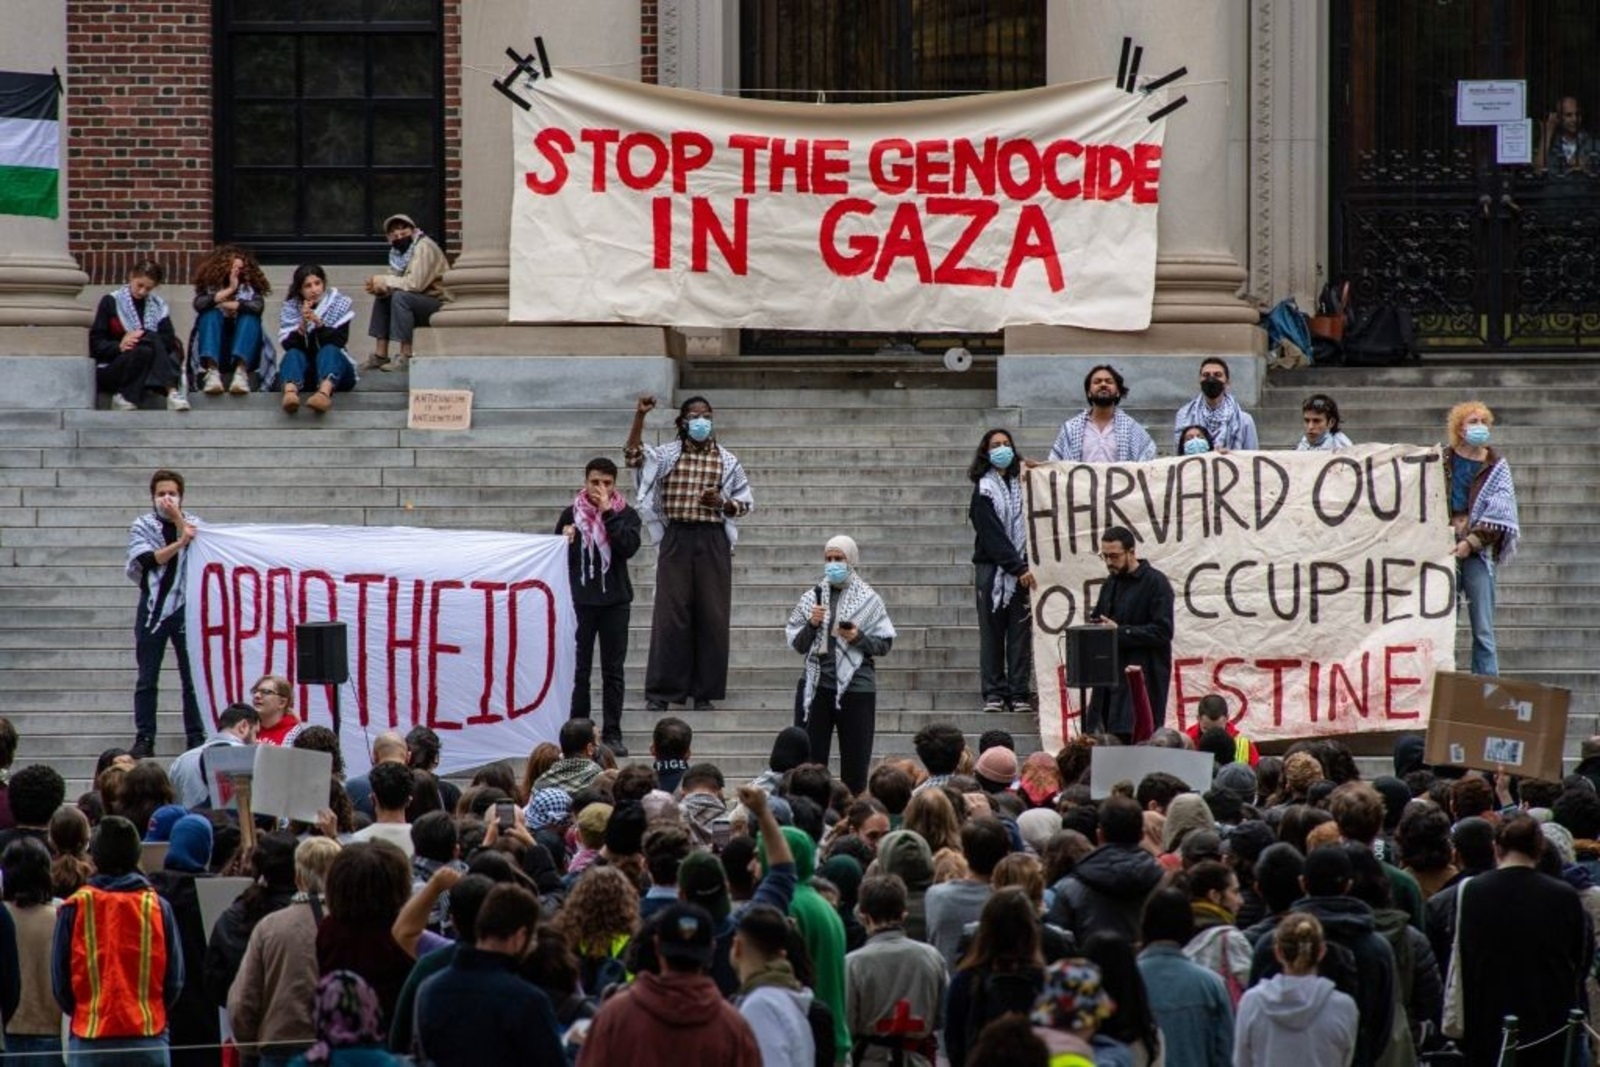 الولايات المتحدة | اعتصامات بجامعات أميركية رفضا للعدوان على غزة و”كولومبيا” تلوّح ببدائل لإنهاء الاحتجاج